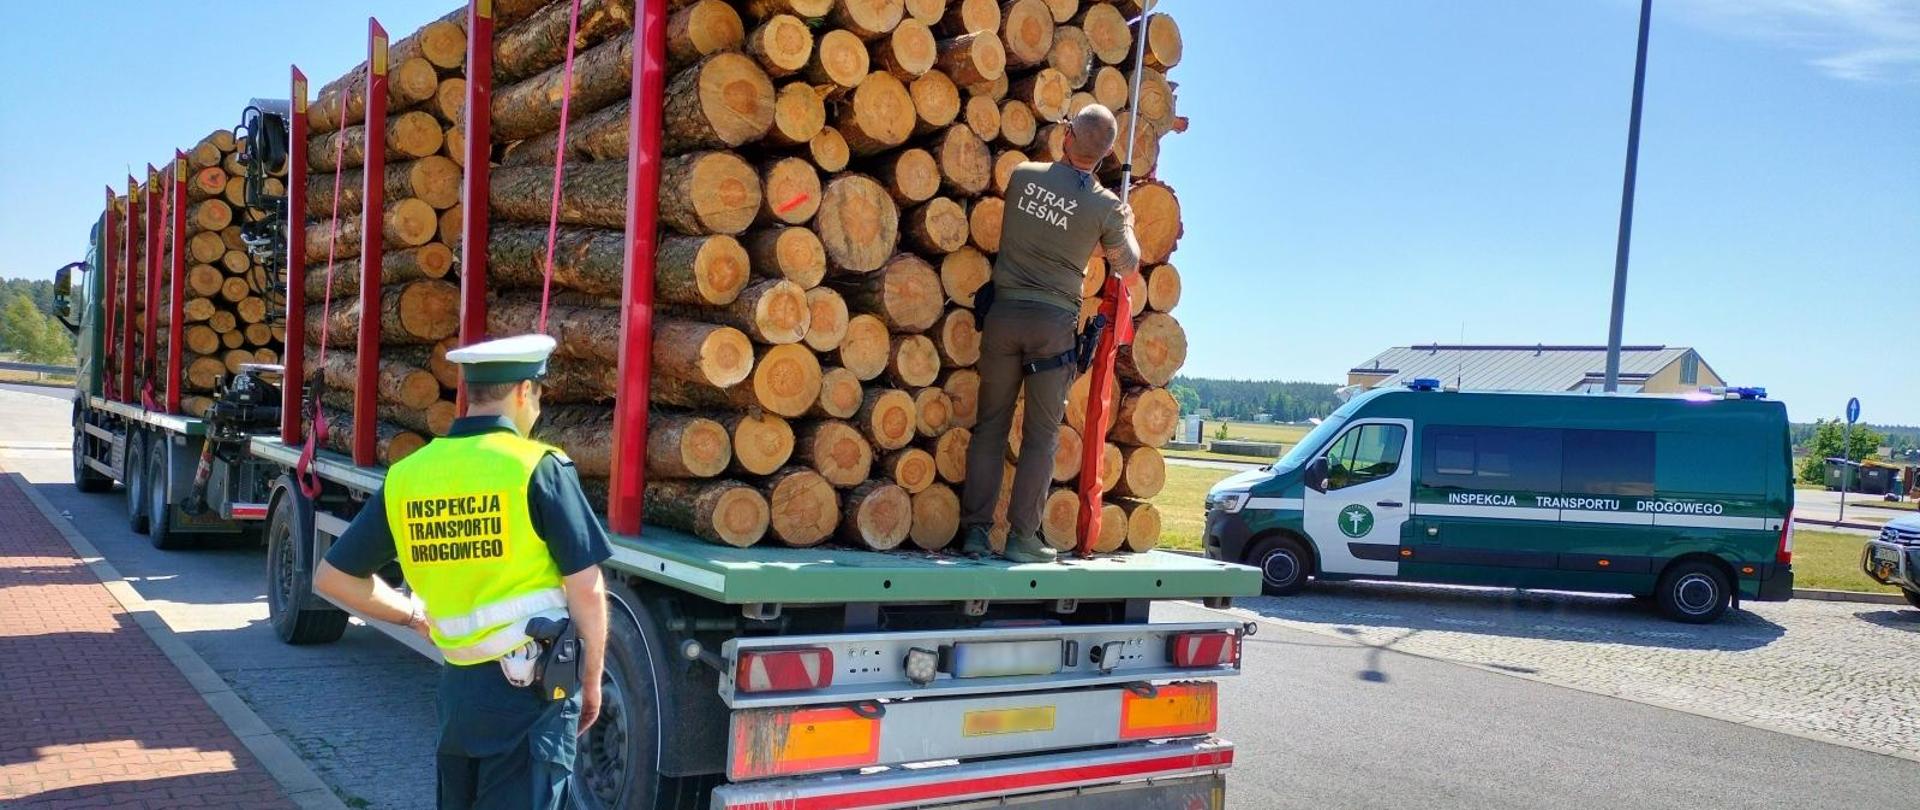 Strażnik leśny wraz z inspektorem ITD sprawdzają przewożone drewno za pomocą przymiaru teleskopowego, w tle za nimi pojazd Inspekcji.